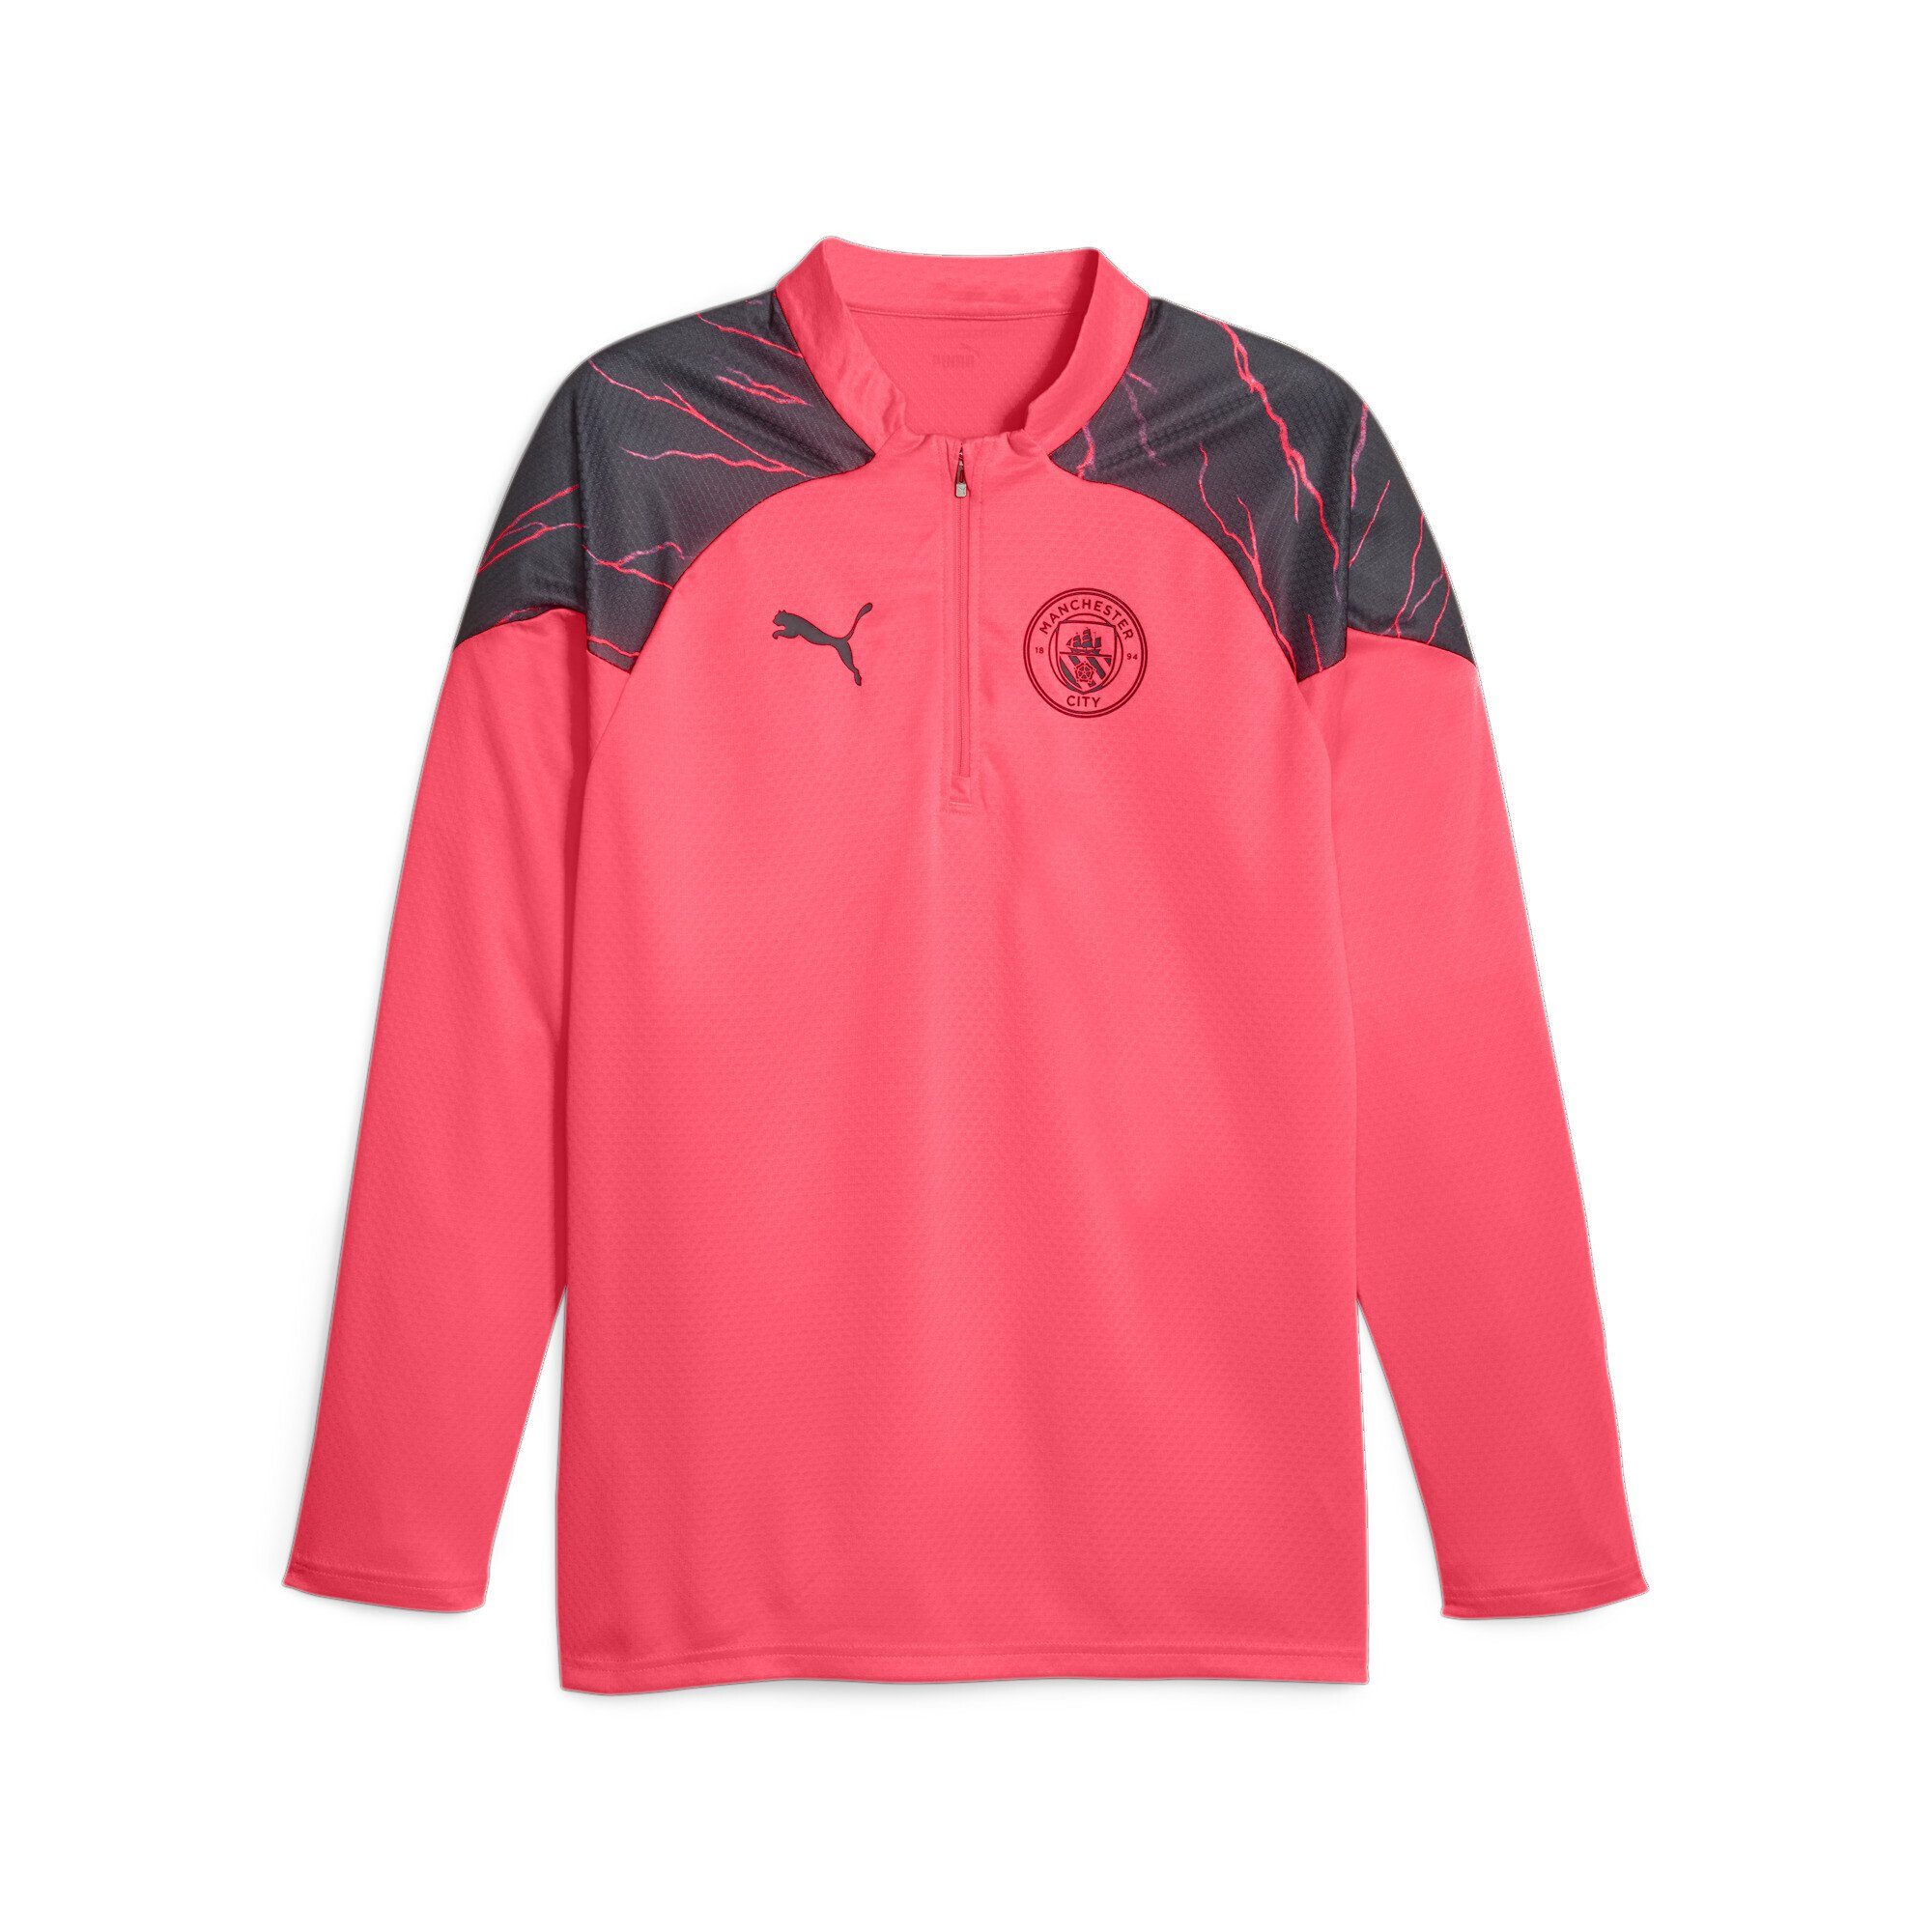 PUMA Trainingsshirt Manchester City Fußball-Trainings-Top Sunset Viertelreißverschluss mit Pink Black Glow Dark Navy